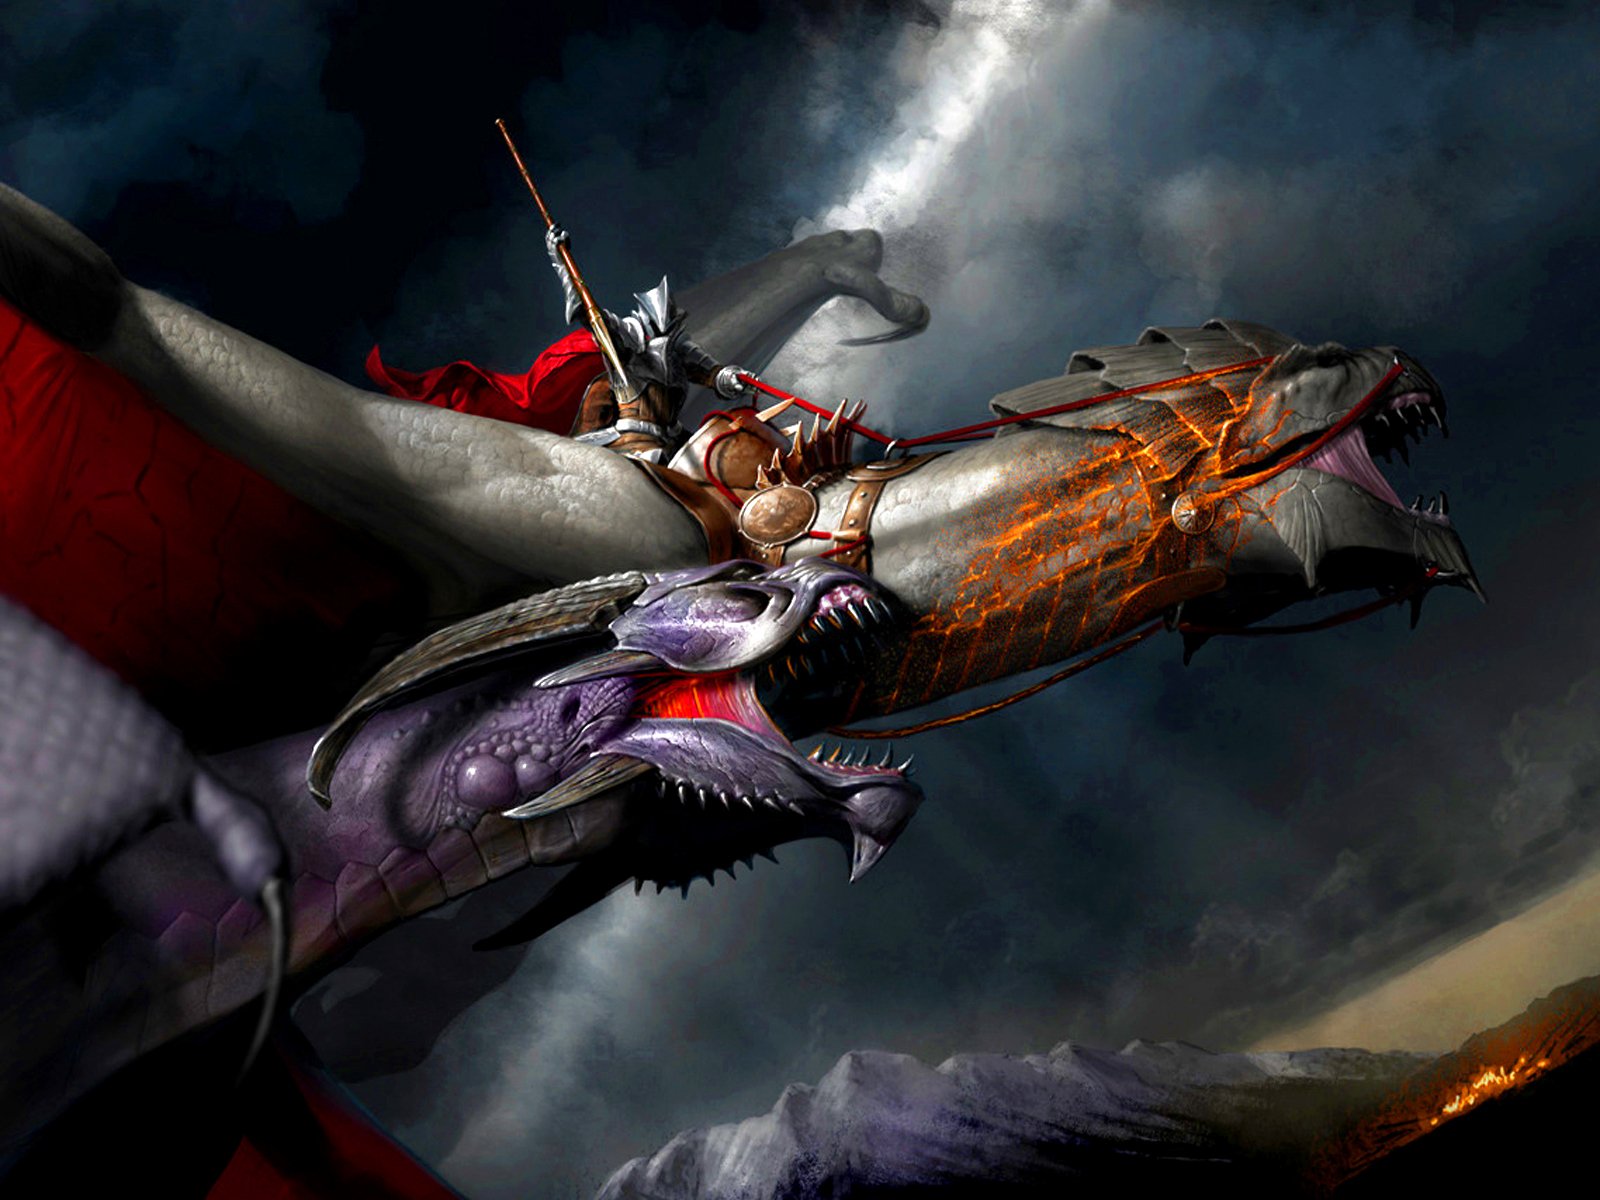 dragon knight wallpaper,juego de acción y aventura,cg artwork,juego de pc,juegos,personaje de ficción